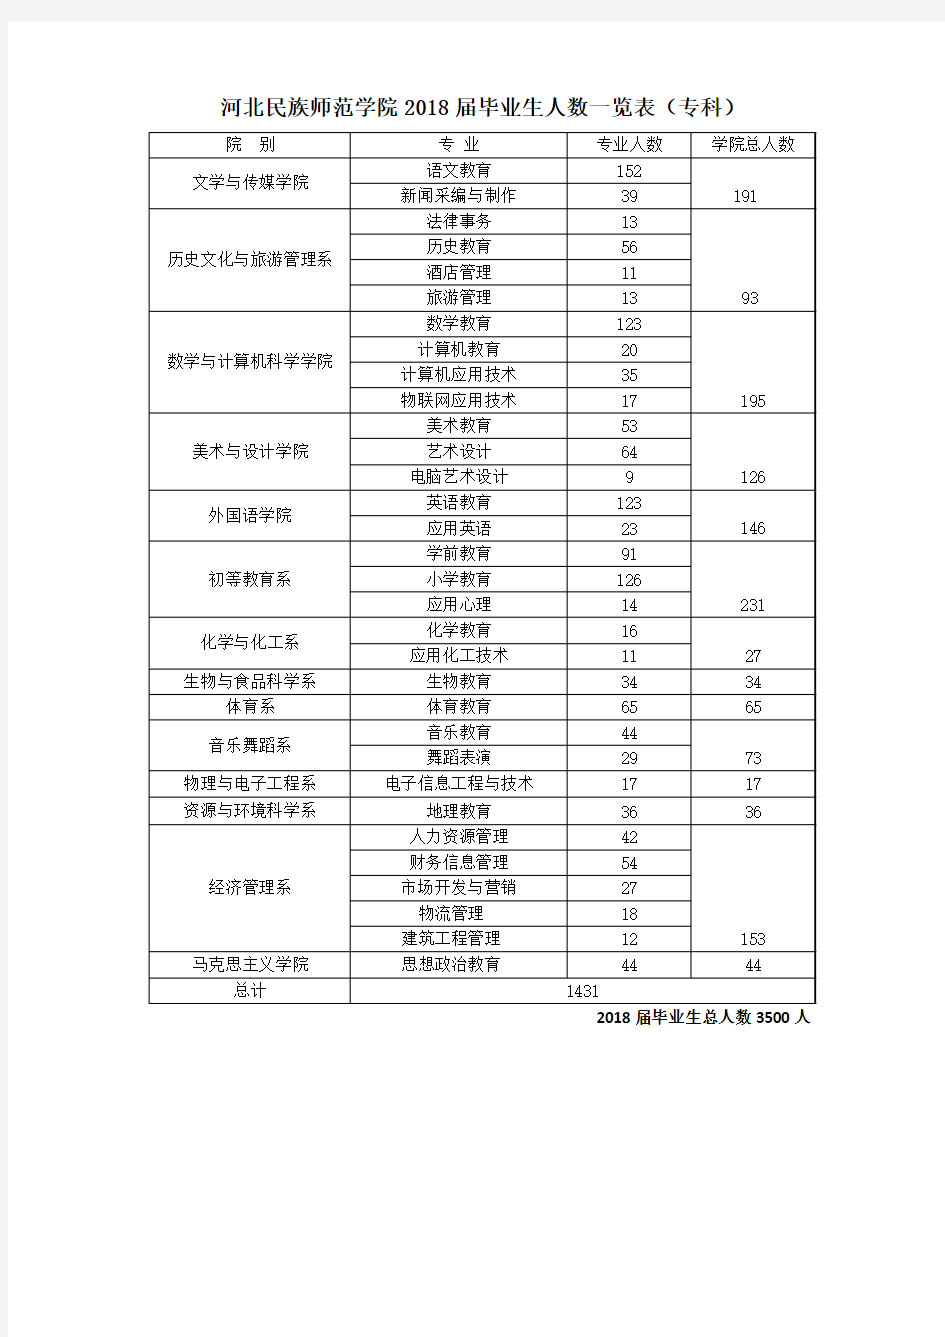 河北民族师范学院2018届毕业生人数一览表本科